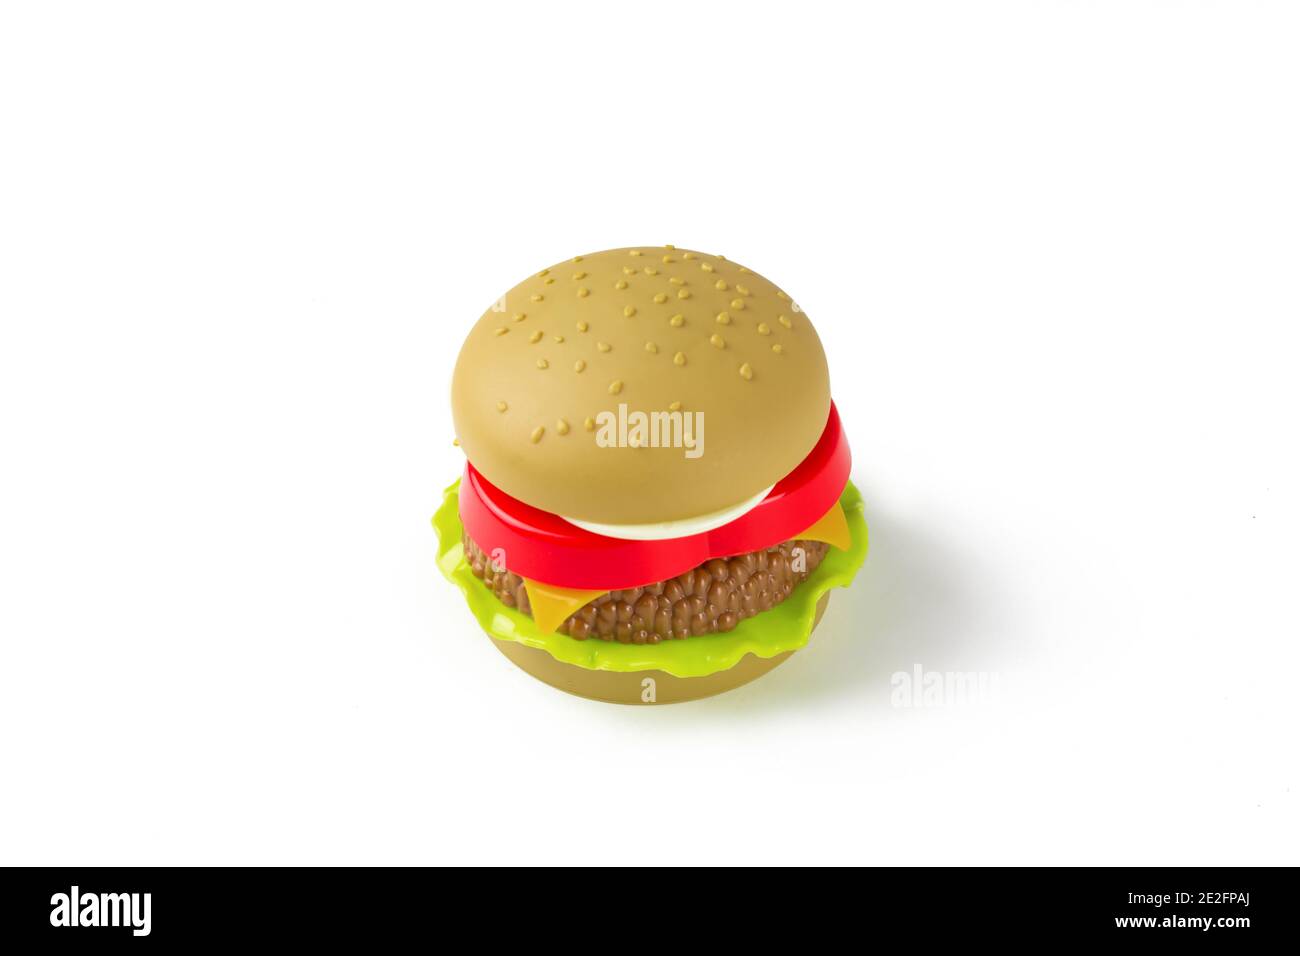 Hamburger giocattolo su sfondo bianco. Concetto di cibo artificiale nocivo Foto Stock